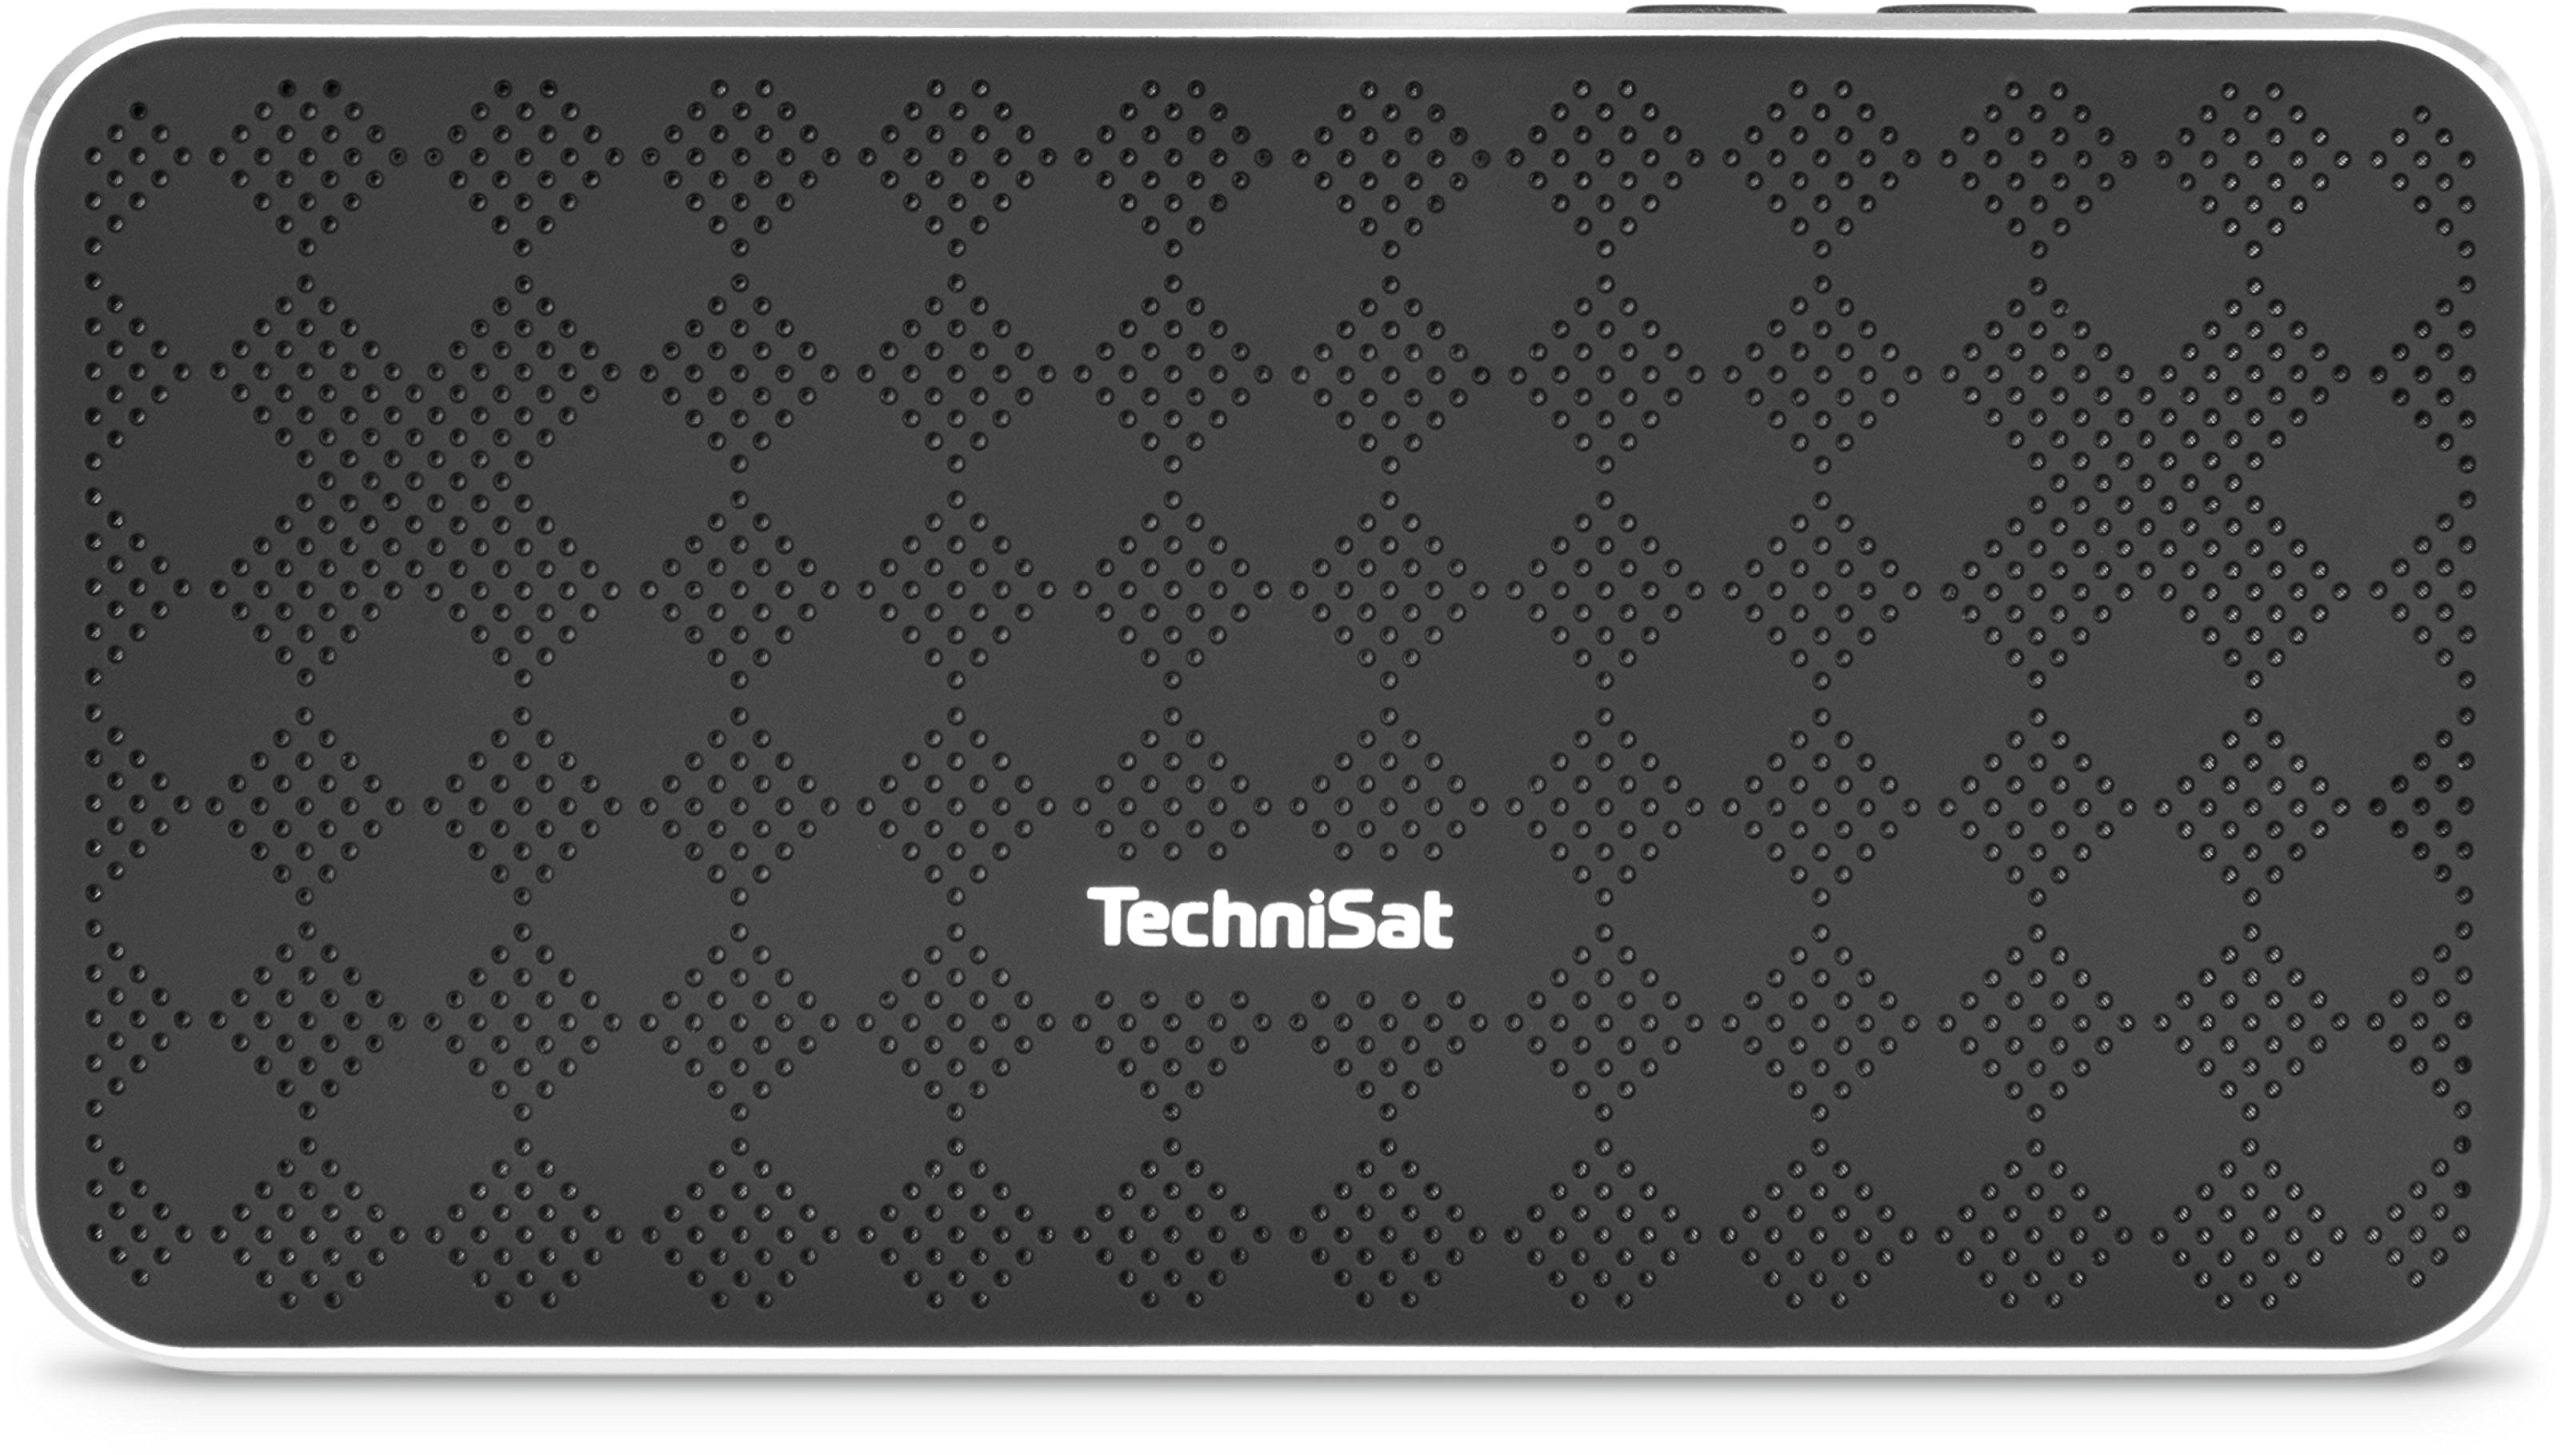 TechniSat BLUSPEAKER FL 200 / Bluetooth-Lautsprecher (klein, tragbar, für Outdoor geeignet) mit 10 W, schwarz/silber